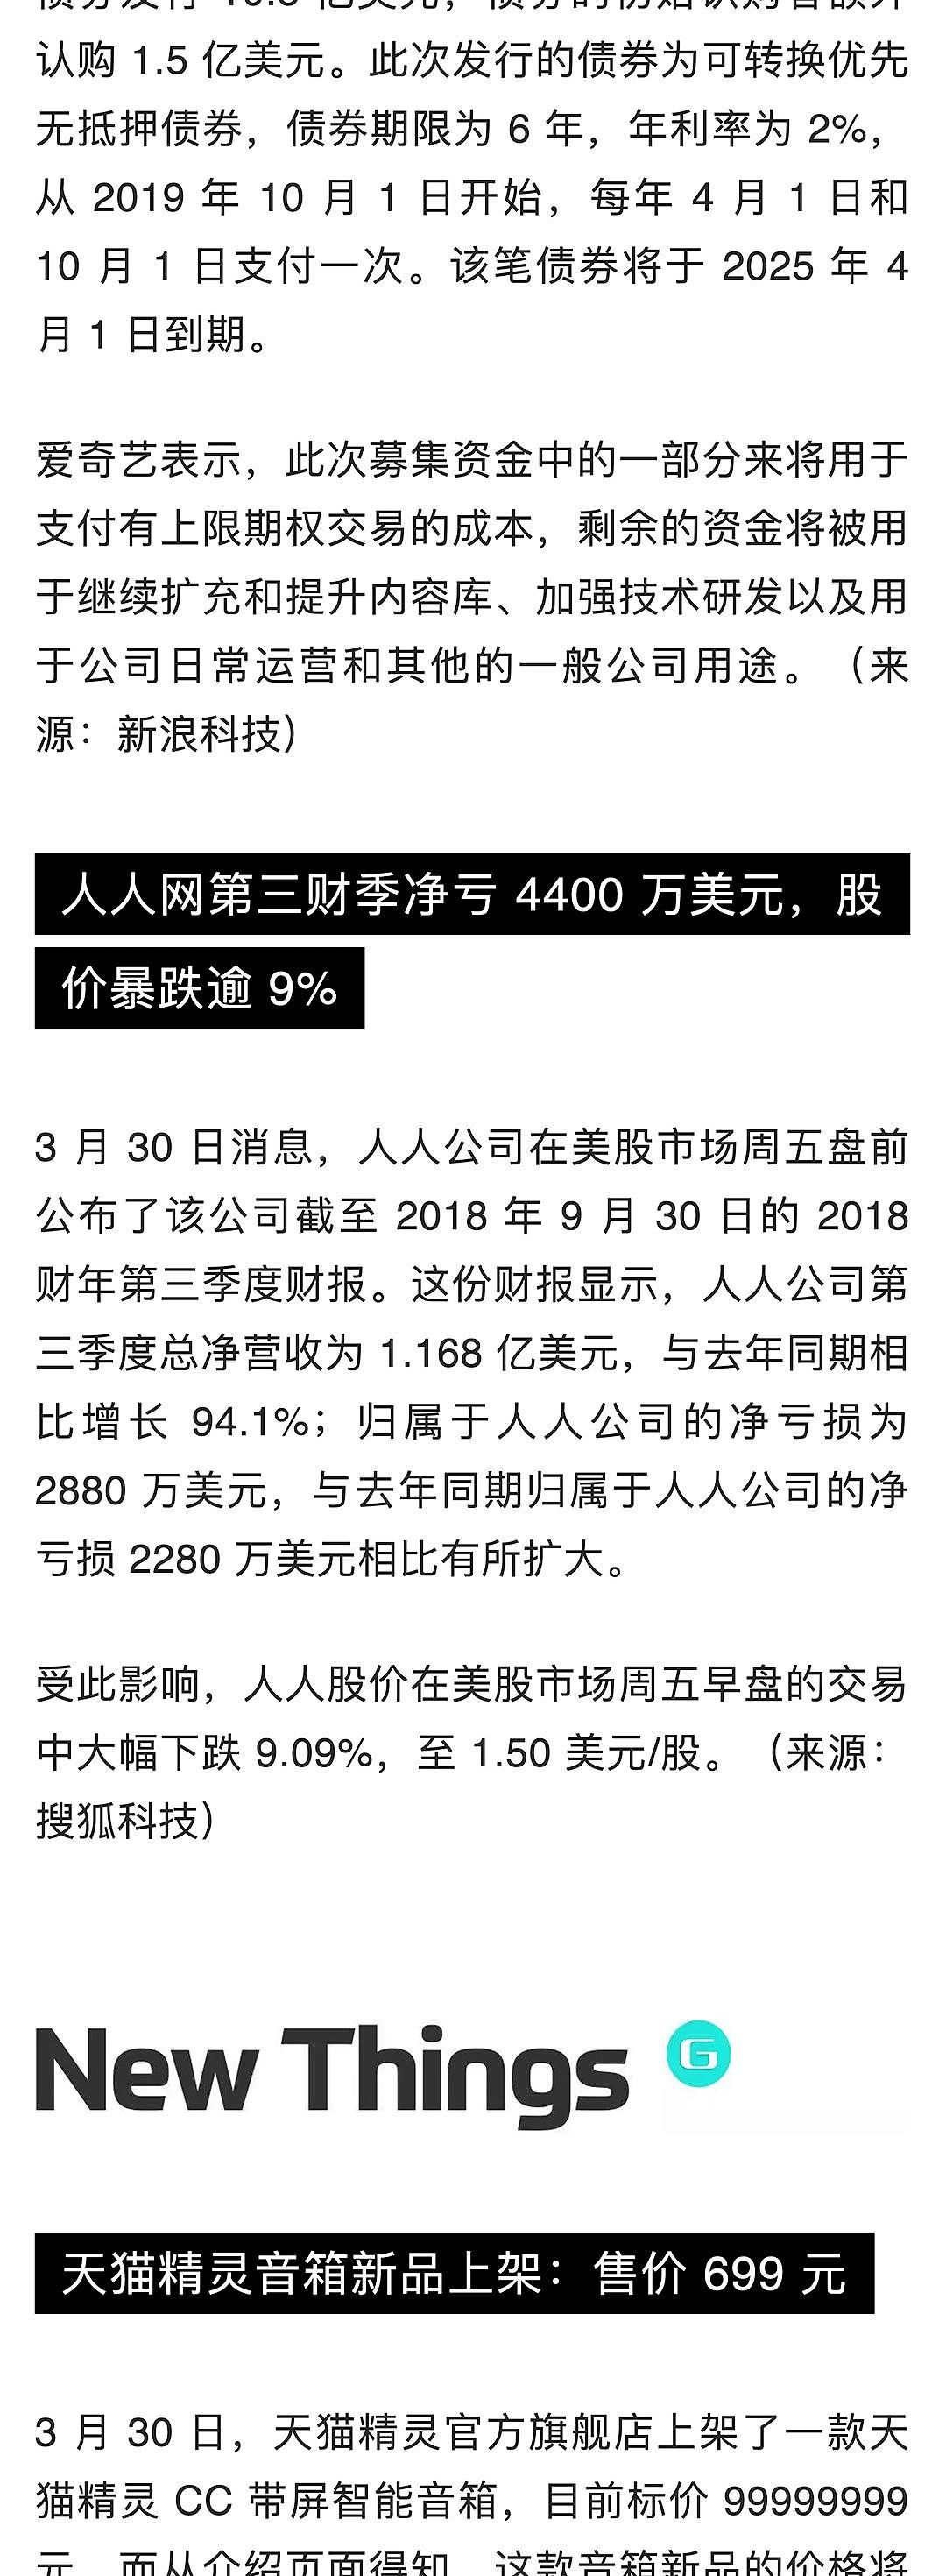 苹果中国全线降价约 3%；熊猫直播宣布正式关闭；苹果挖角特斯拉工程副总裁 | 极客早知道 - 6